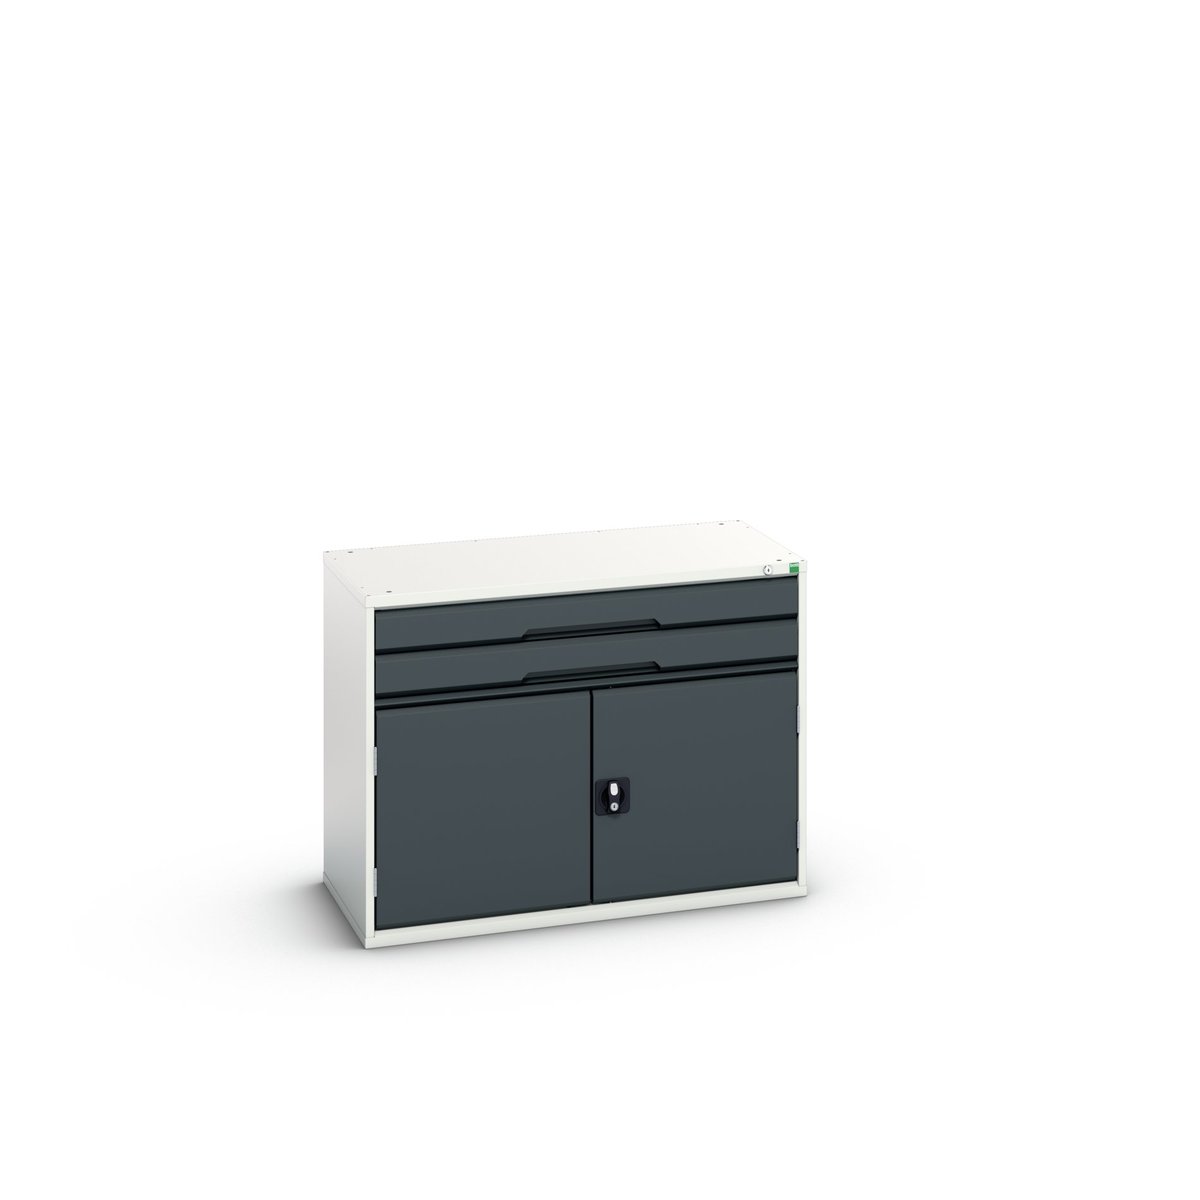 16925516. - verso drawer-door cabinet